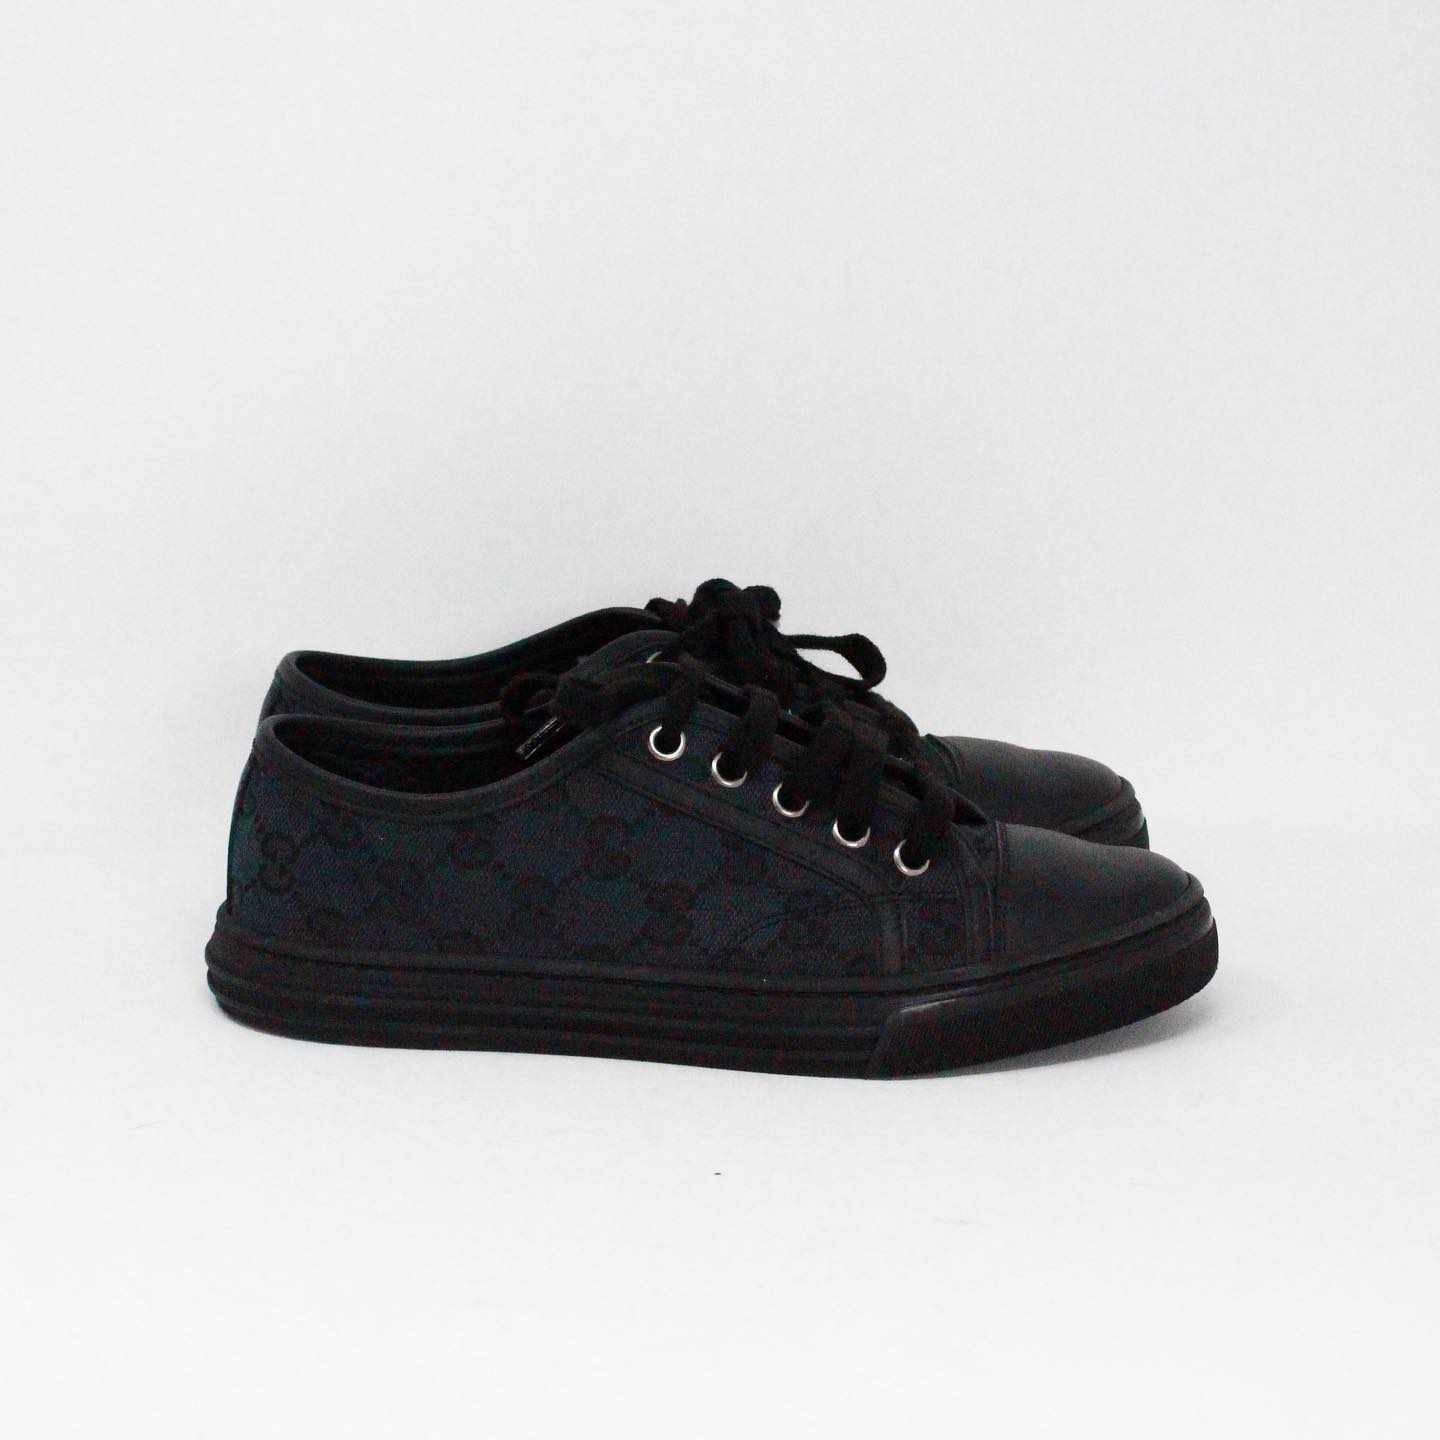 GUCCI #416375 Black Low Top Monogram Canvas Cap Toe Sneakers (US 5 EU 35) 2